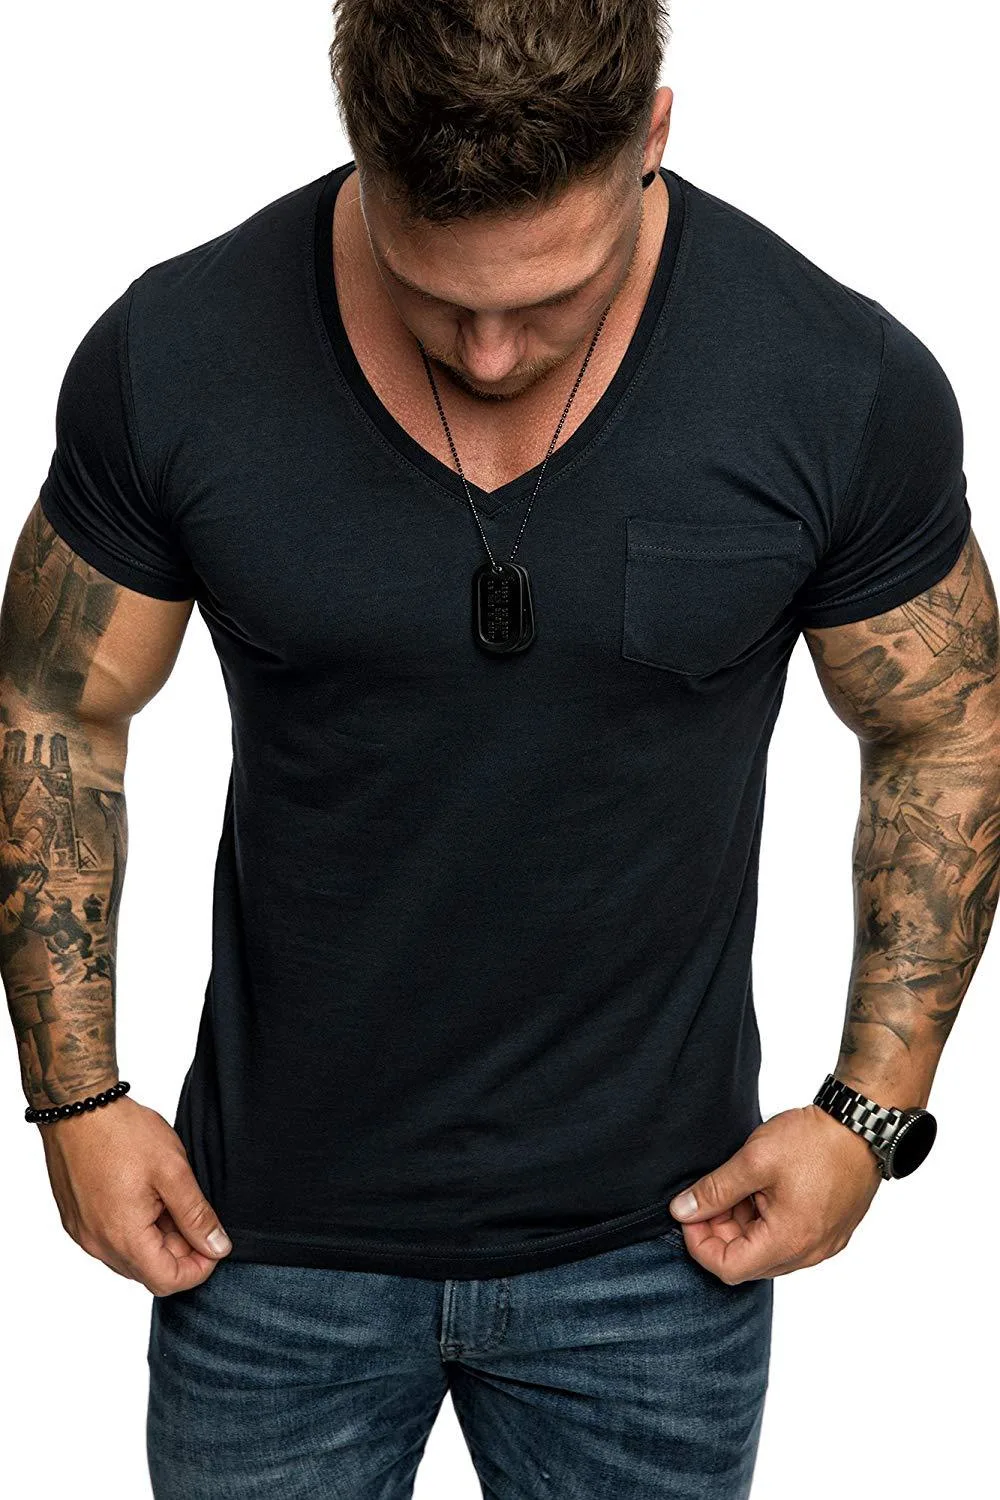 Men's Solid Color T-Shirt Slim Pocket Sports Short-Sleeved Clothing